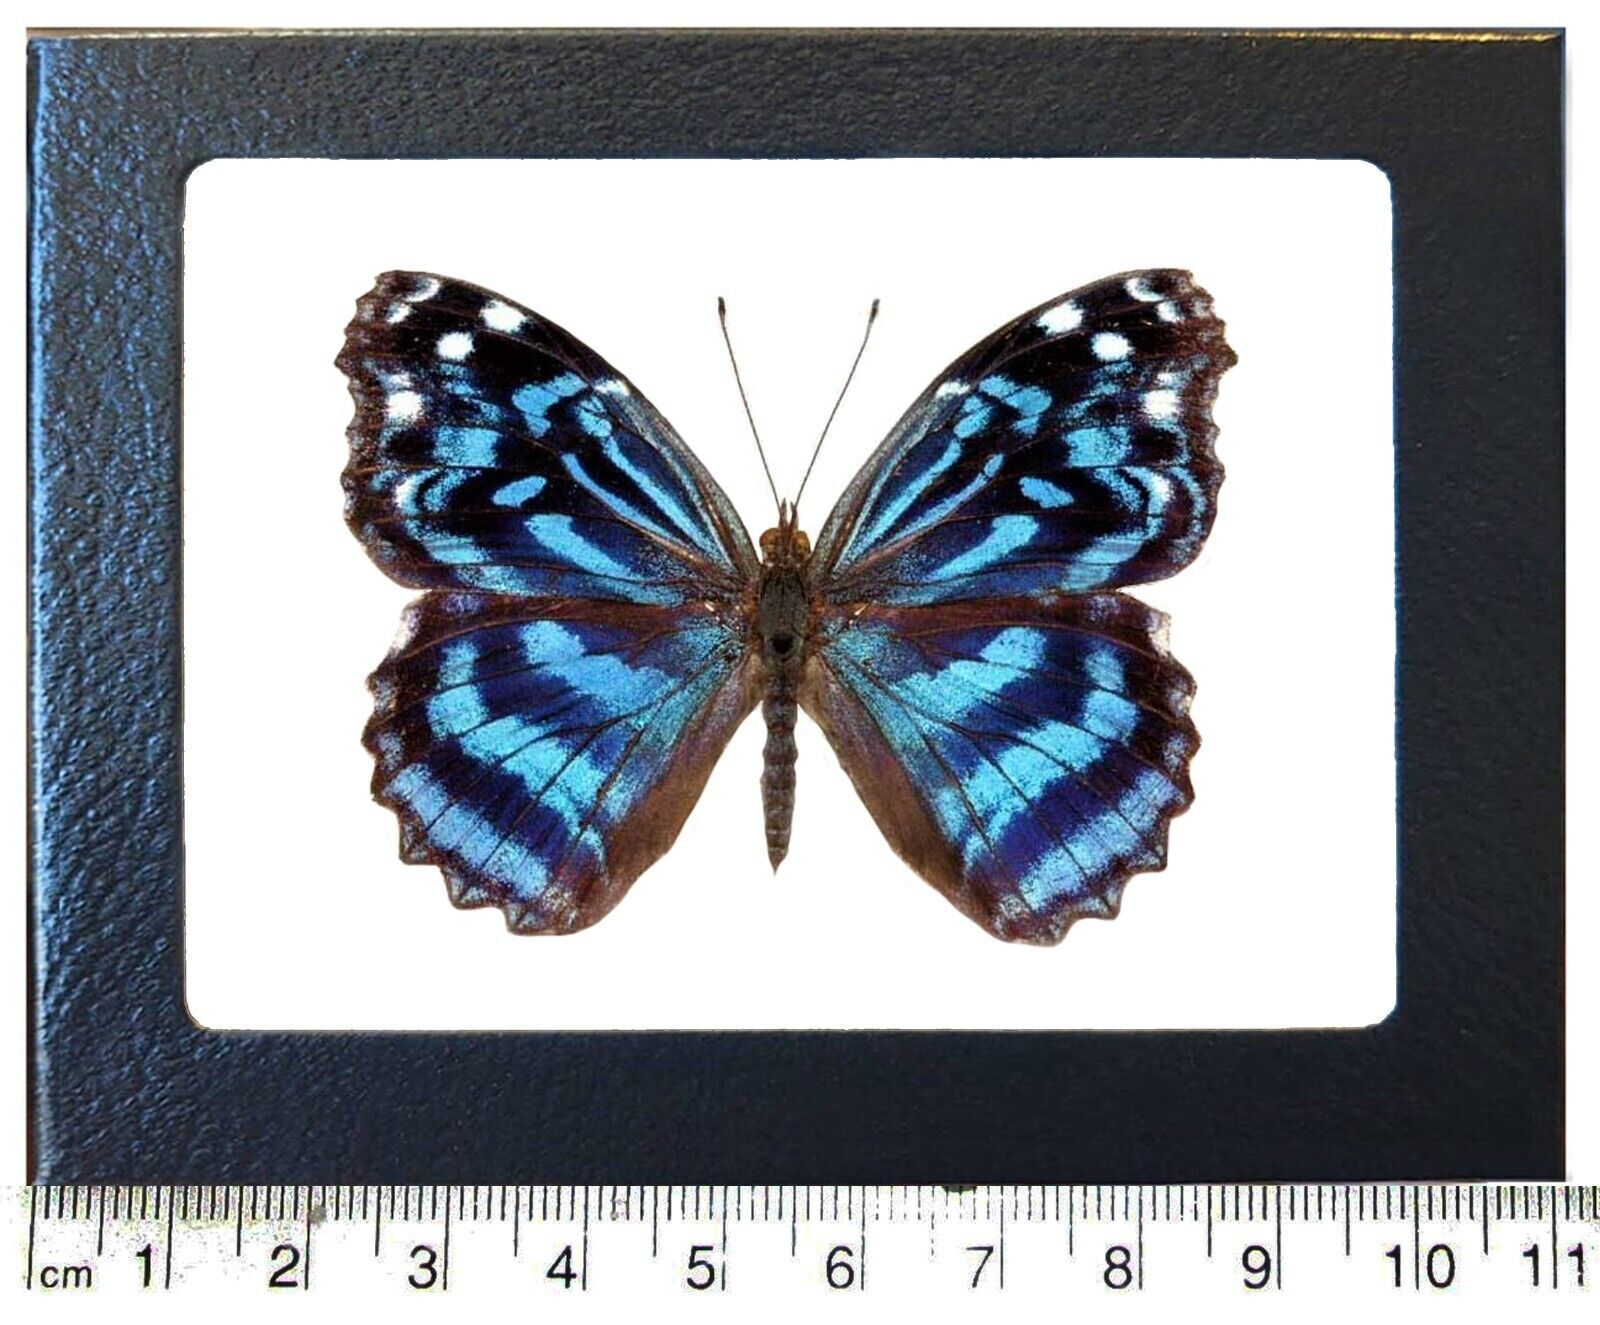 Myscelia ethusa blue purple butterfly Costa Rica framed